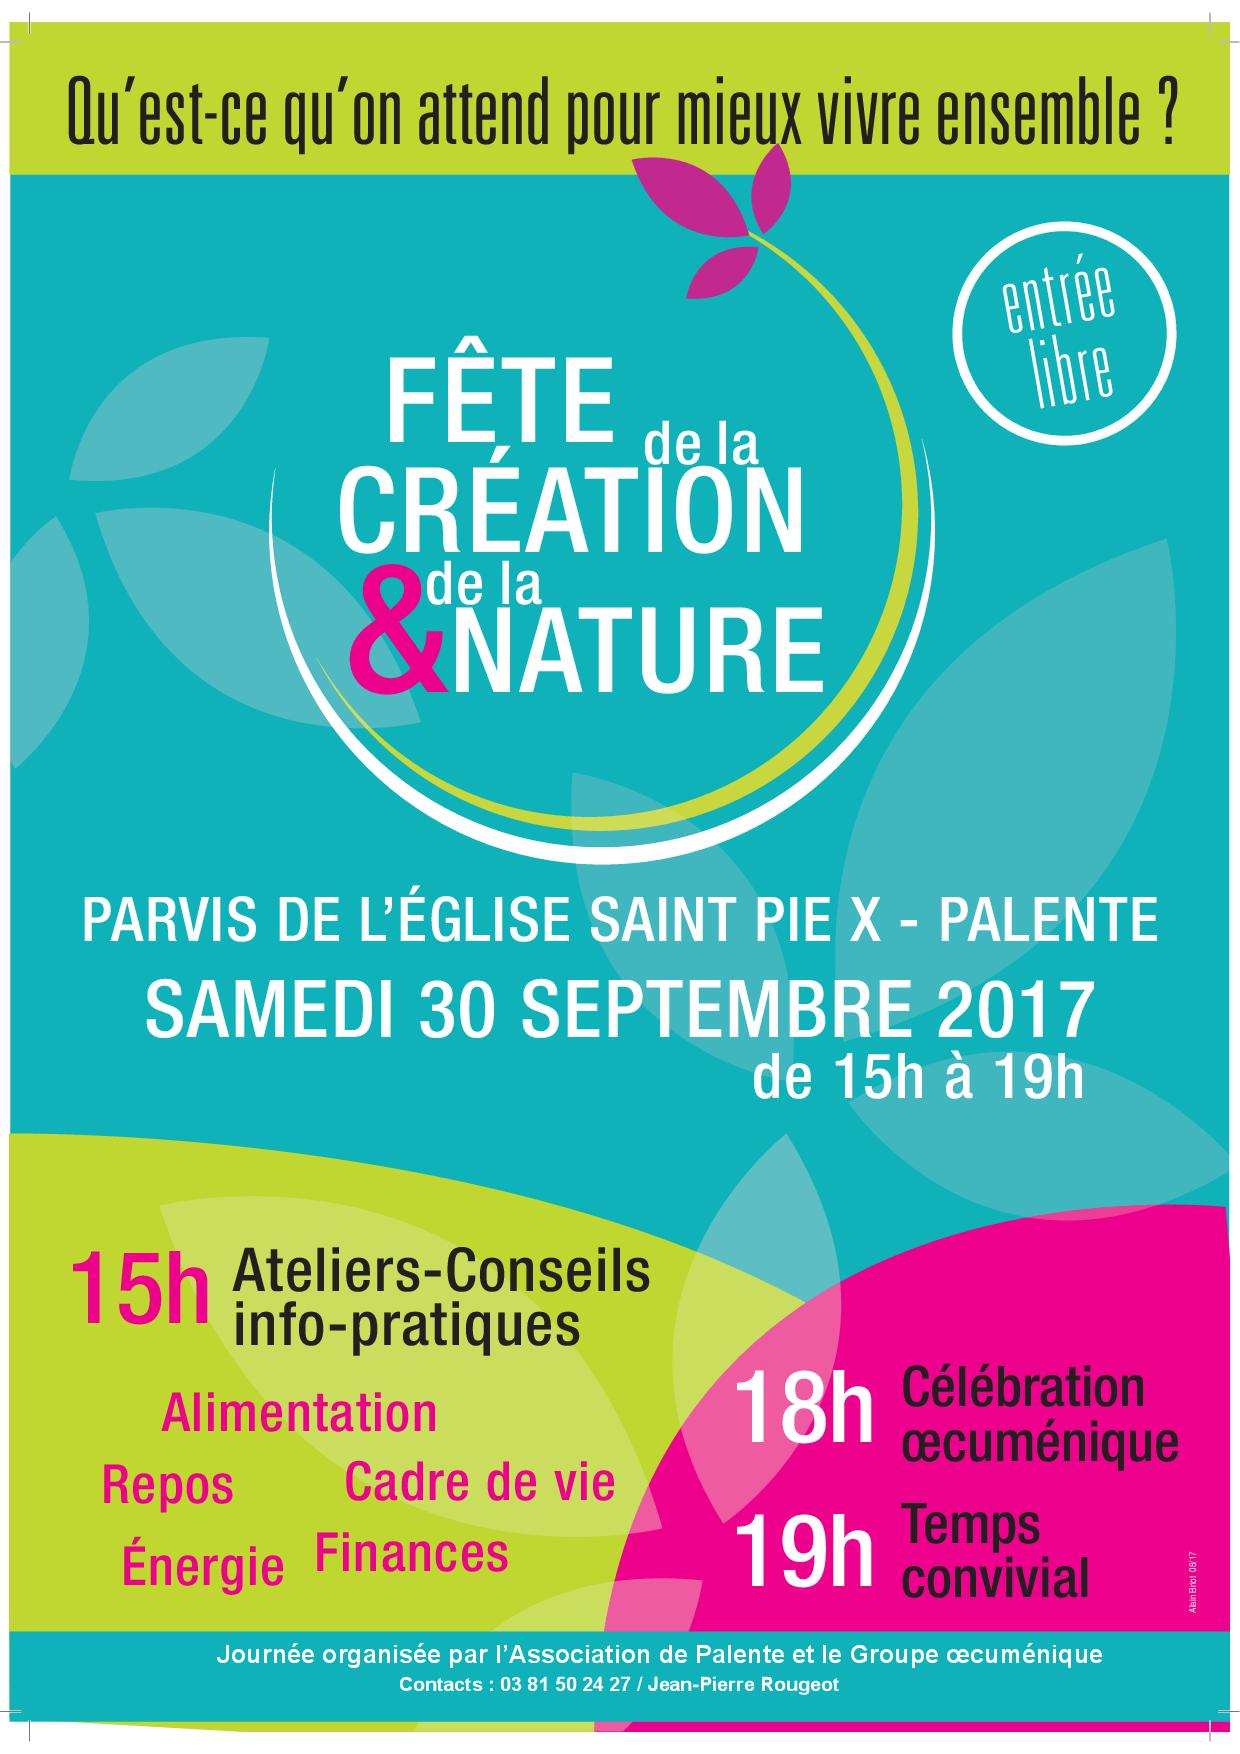 Fête de la Création et de la Nature à Besançon